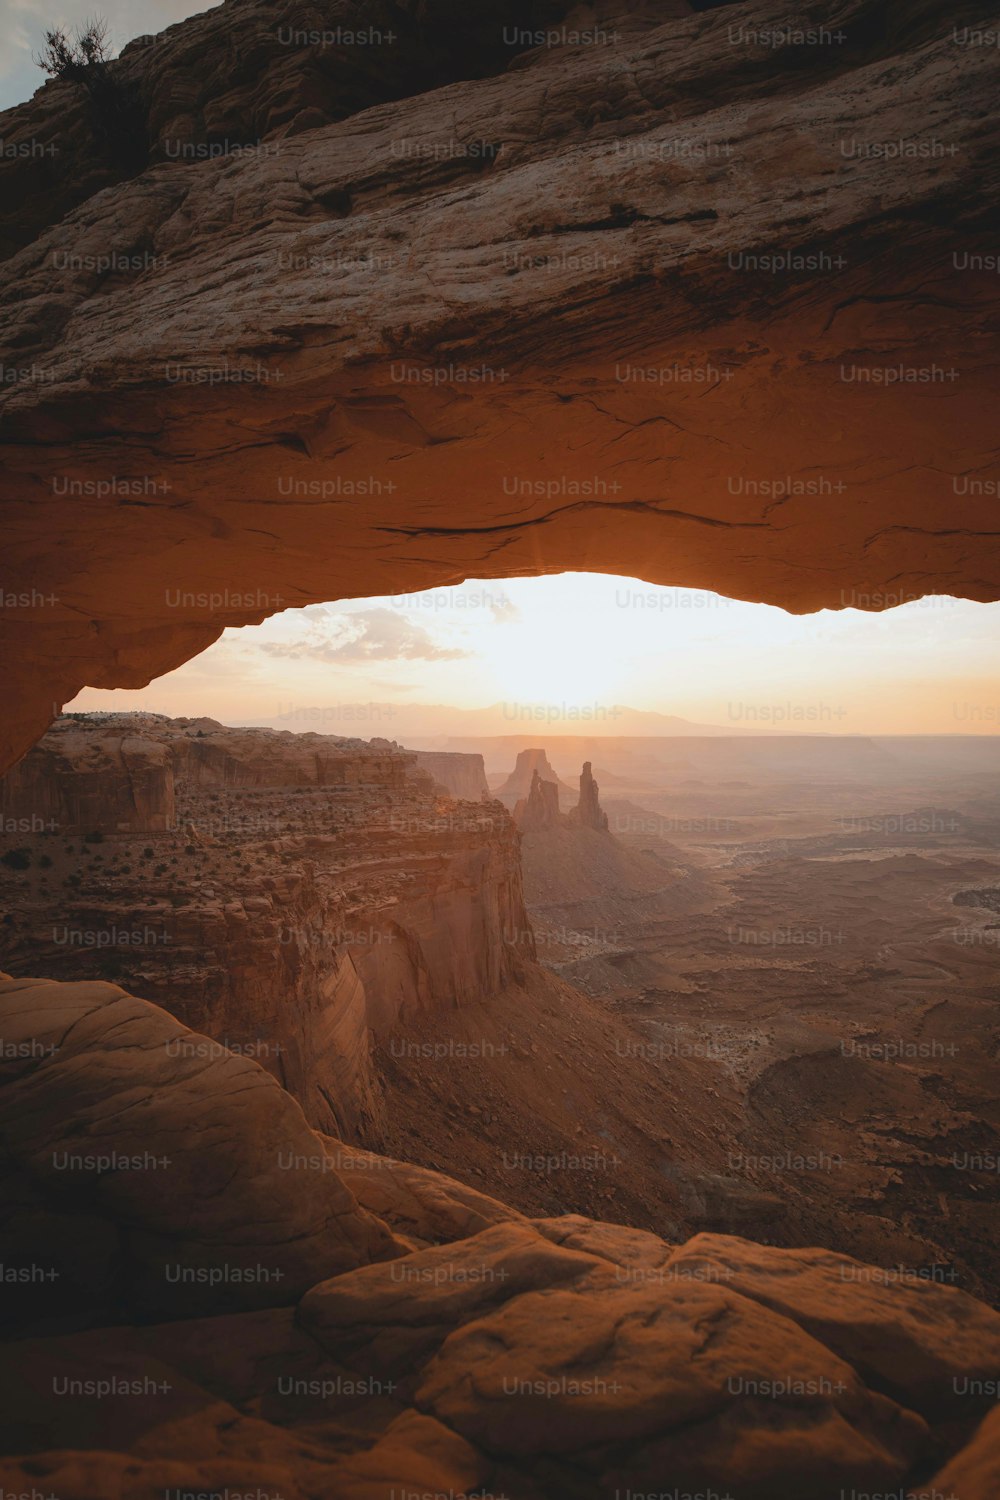 Una vista del desierto desde una formación rocosa